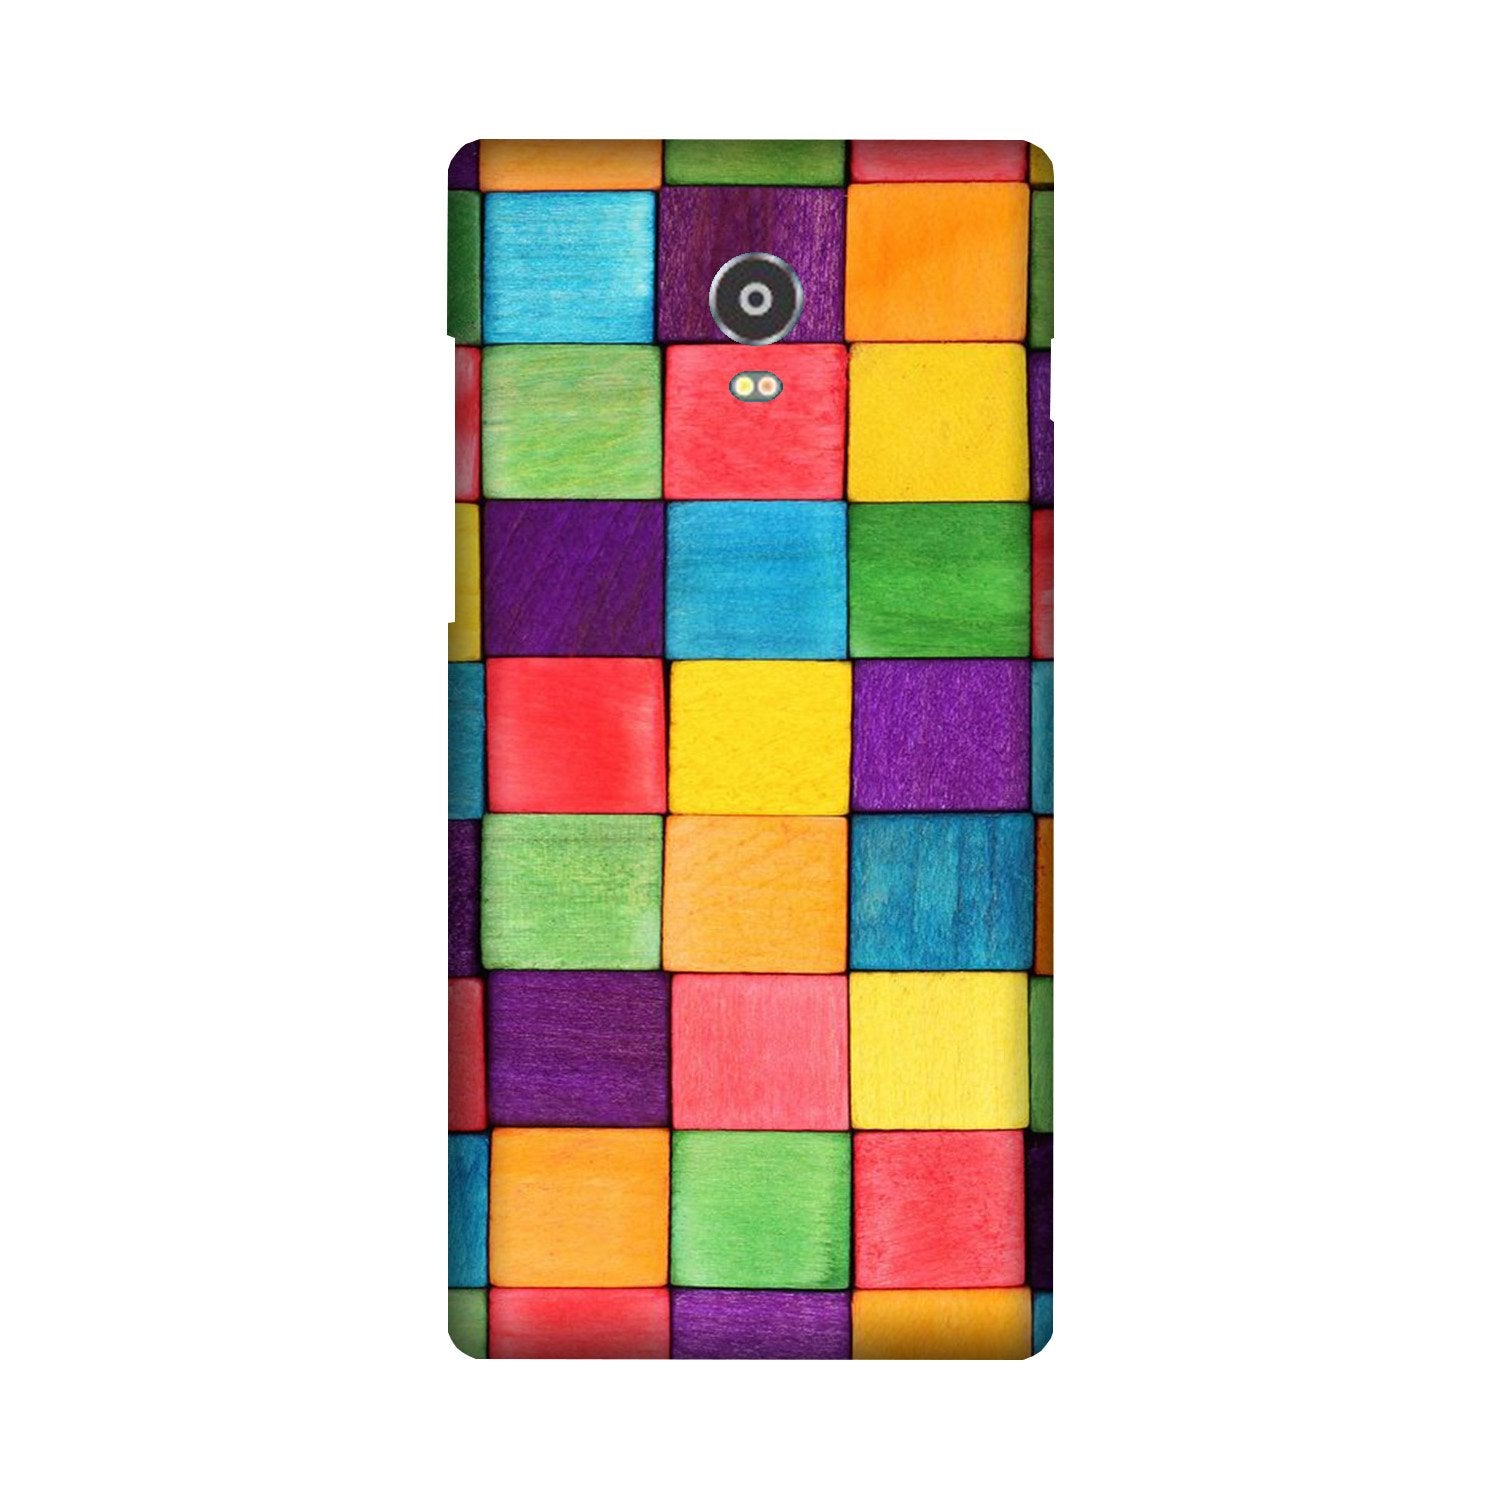 Colorful Square Case for Lenovo Vibe P1 (Design No. 218)